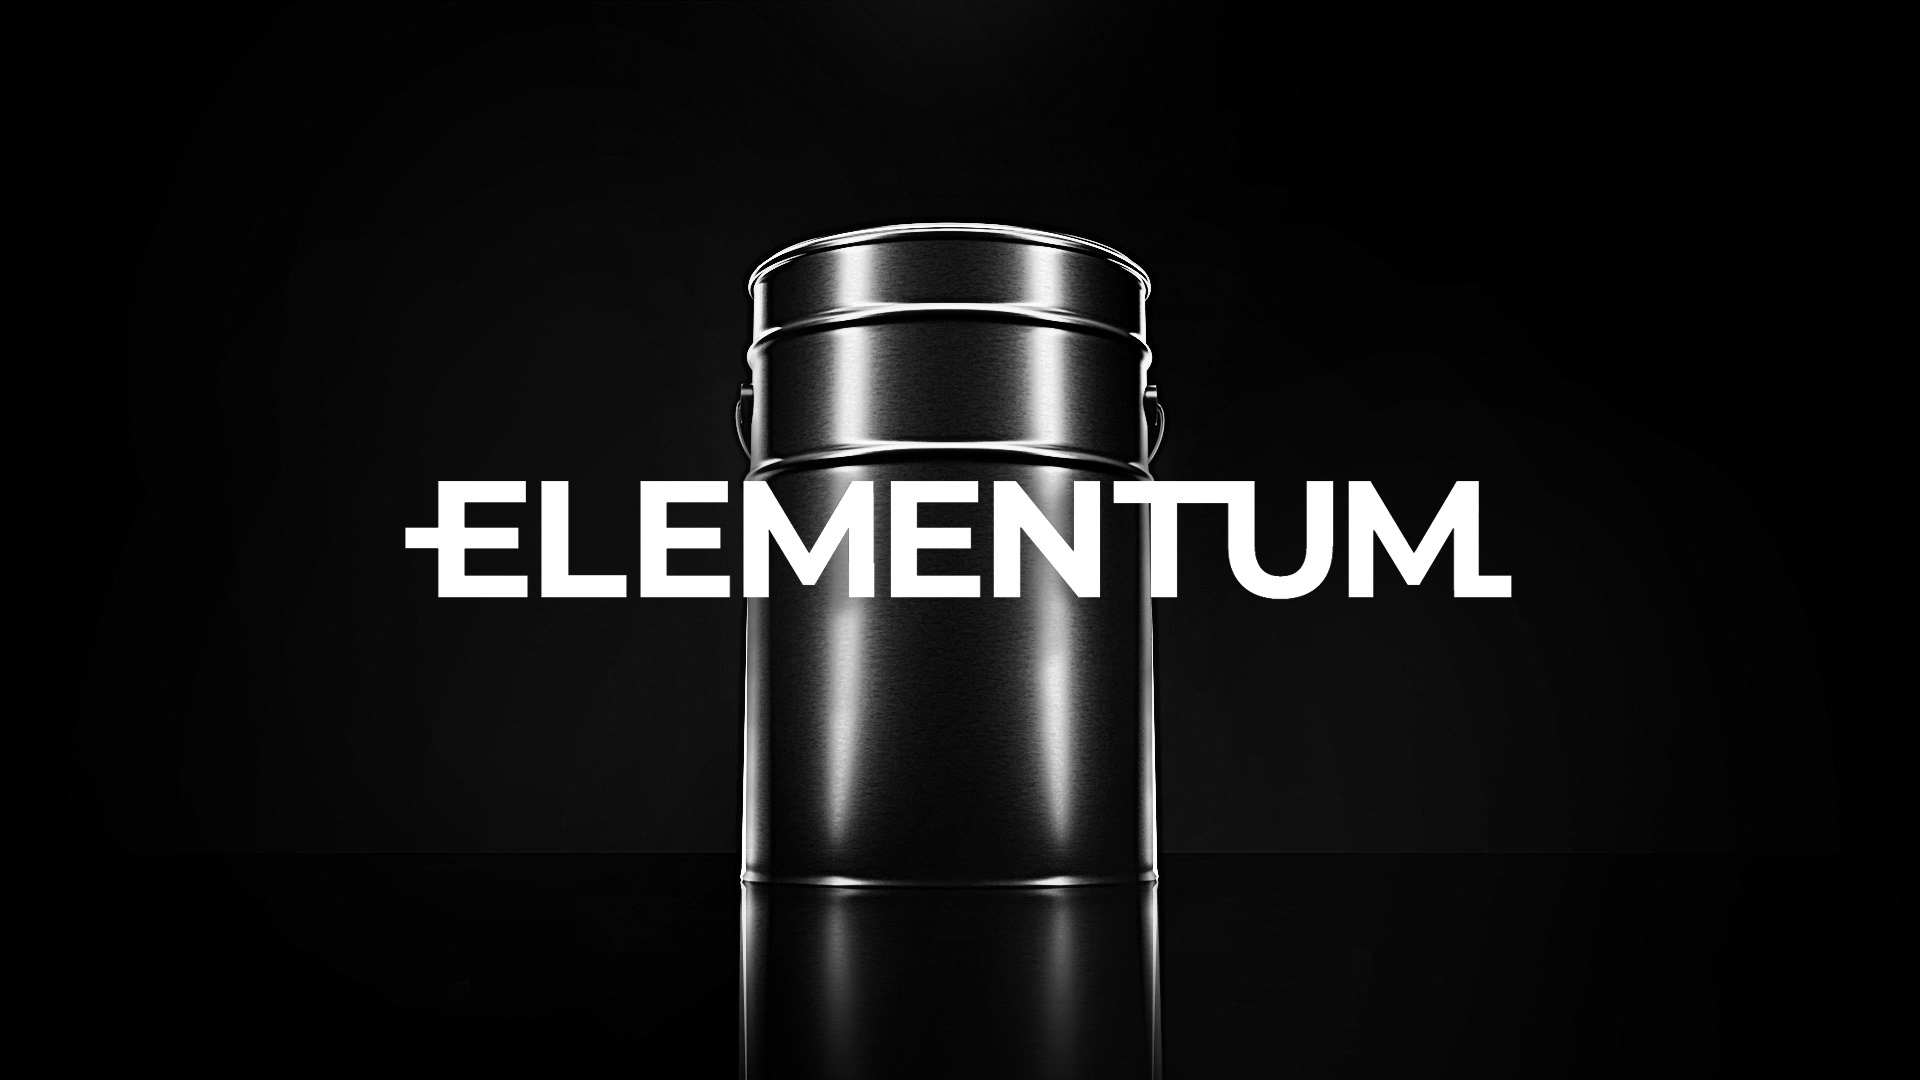 Elementum on Behanceef74e892338189.5e53fb611317a.jpg